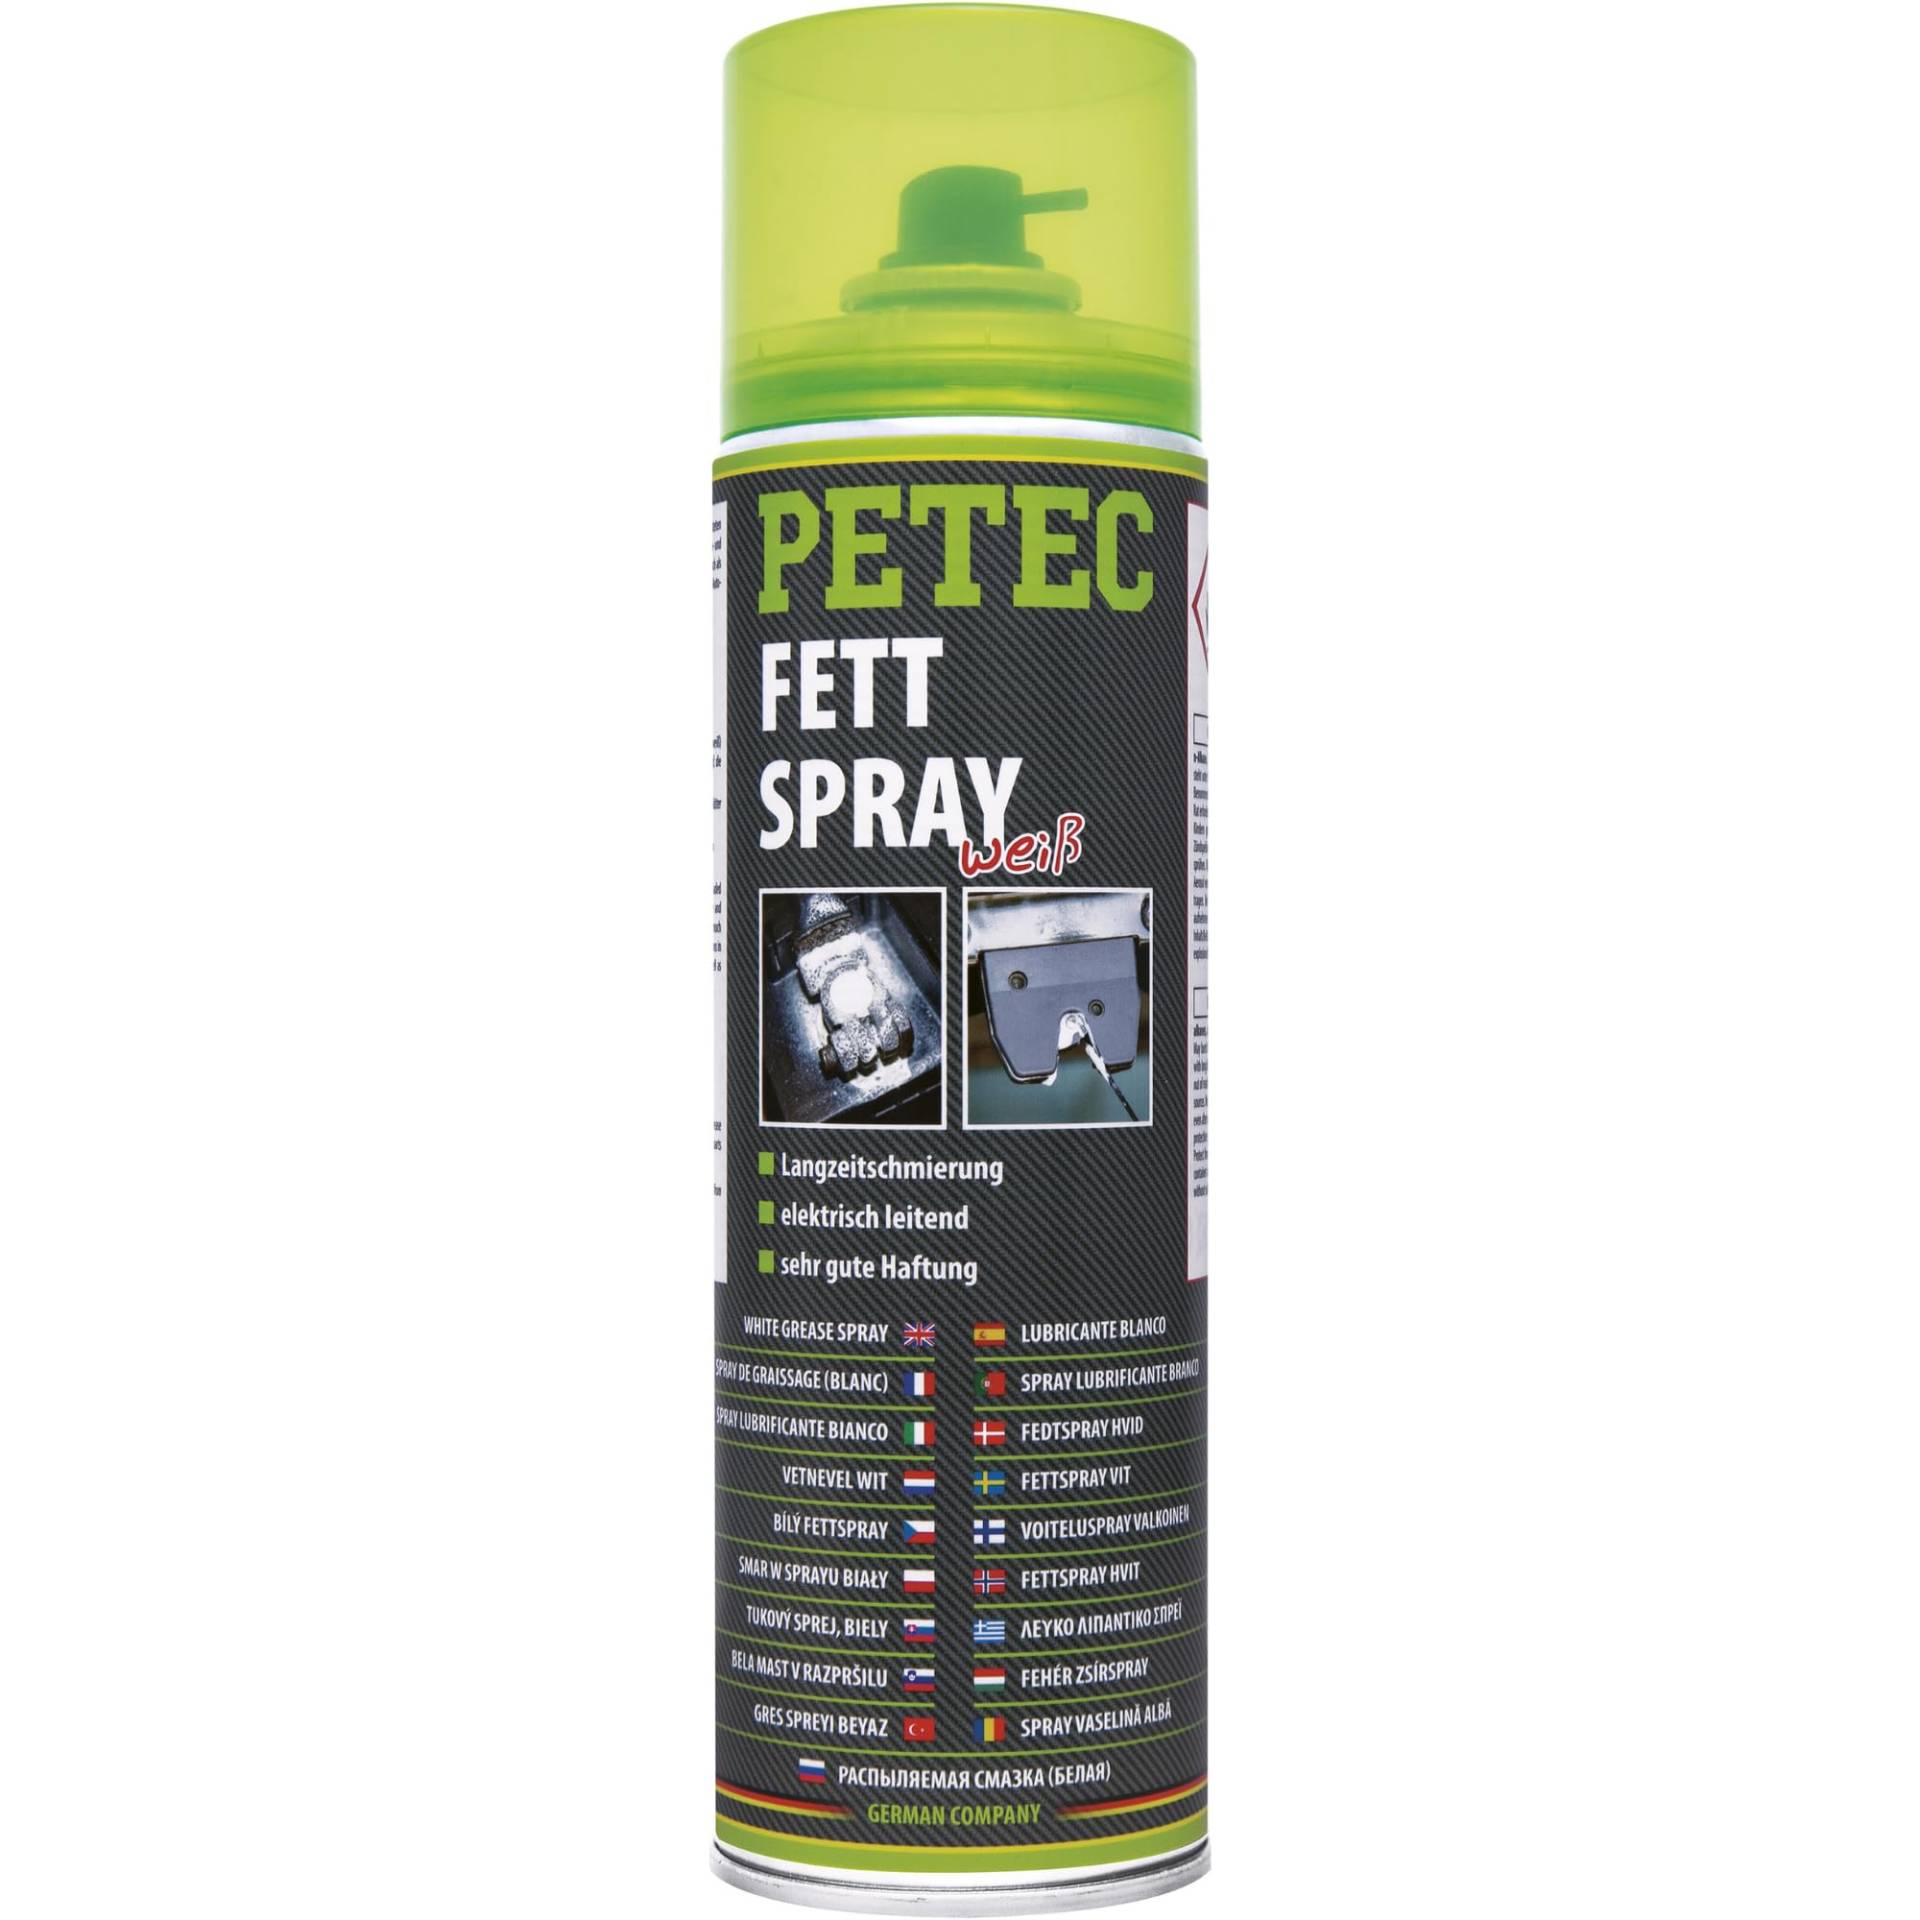 PETEC Fettspray weiß, 500ml 70250 von PETEC